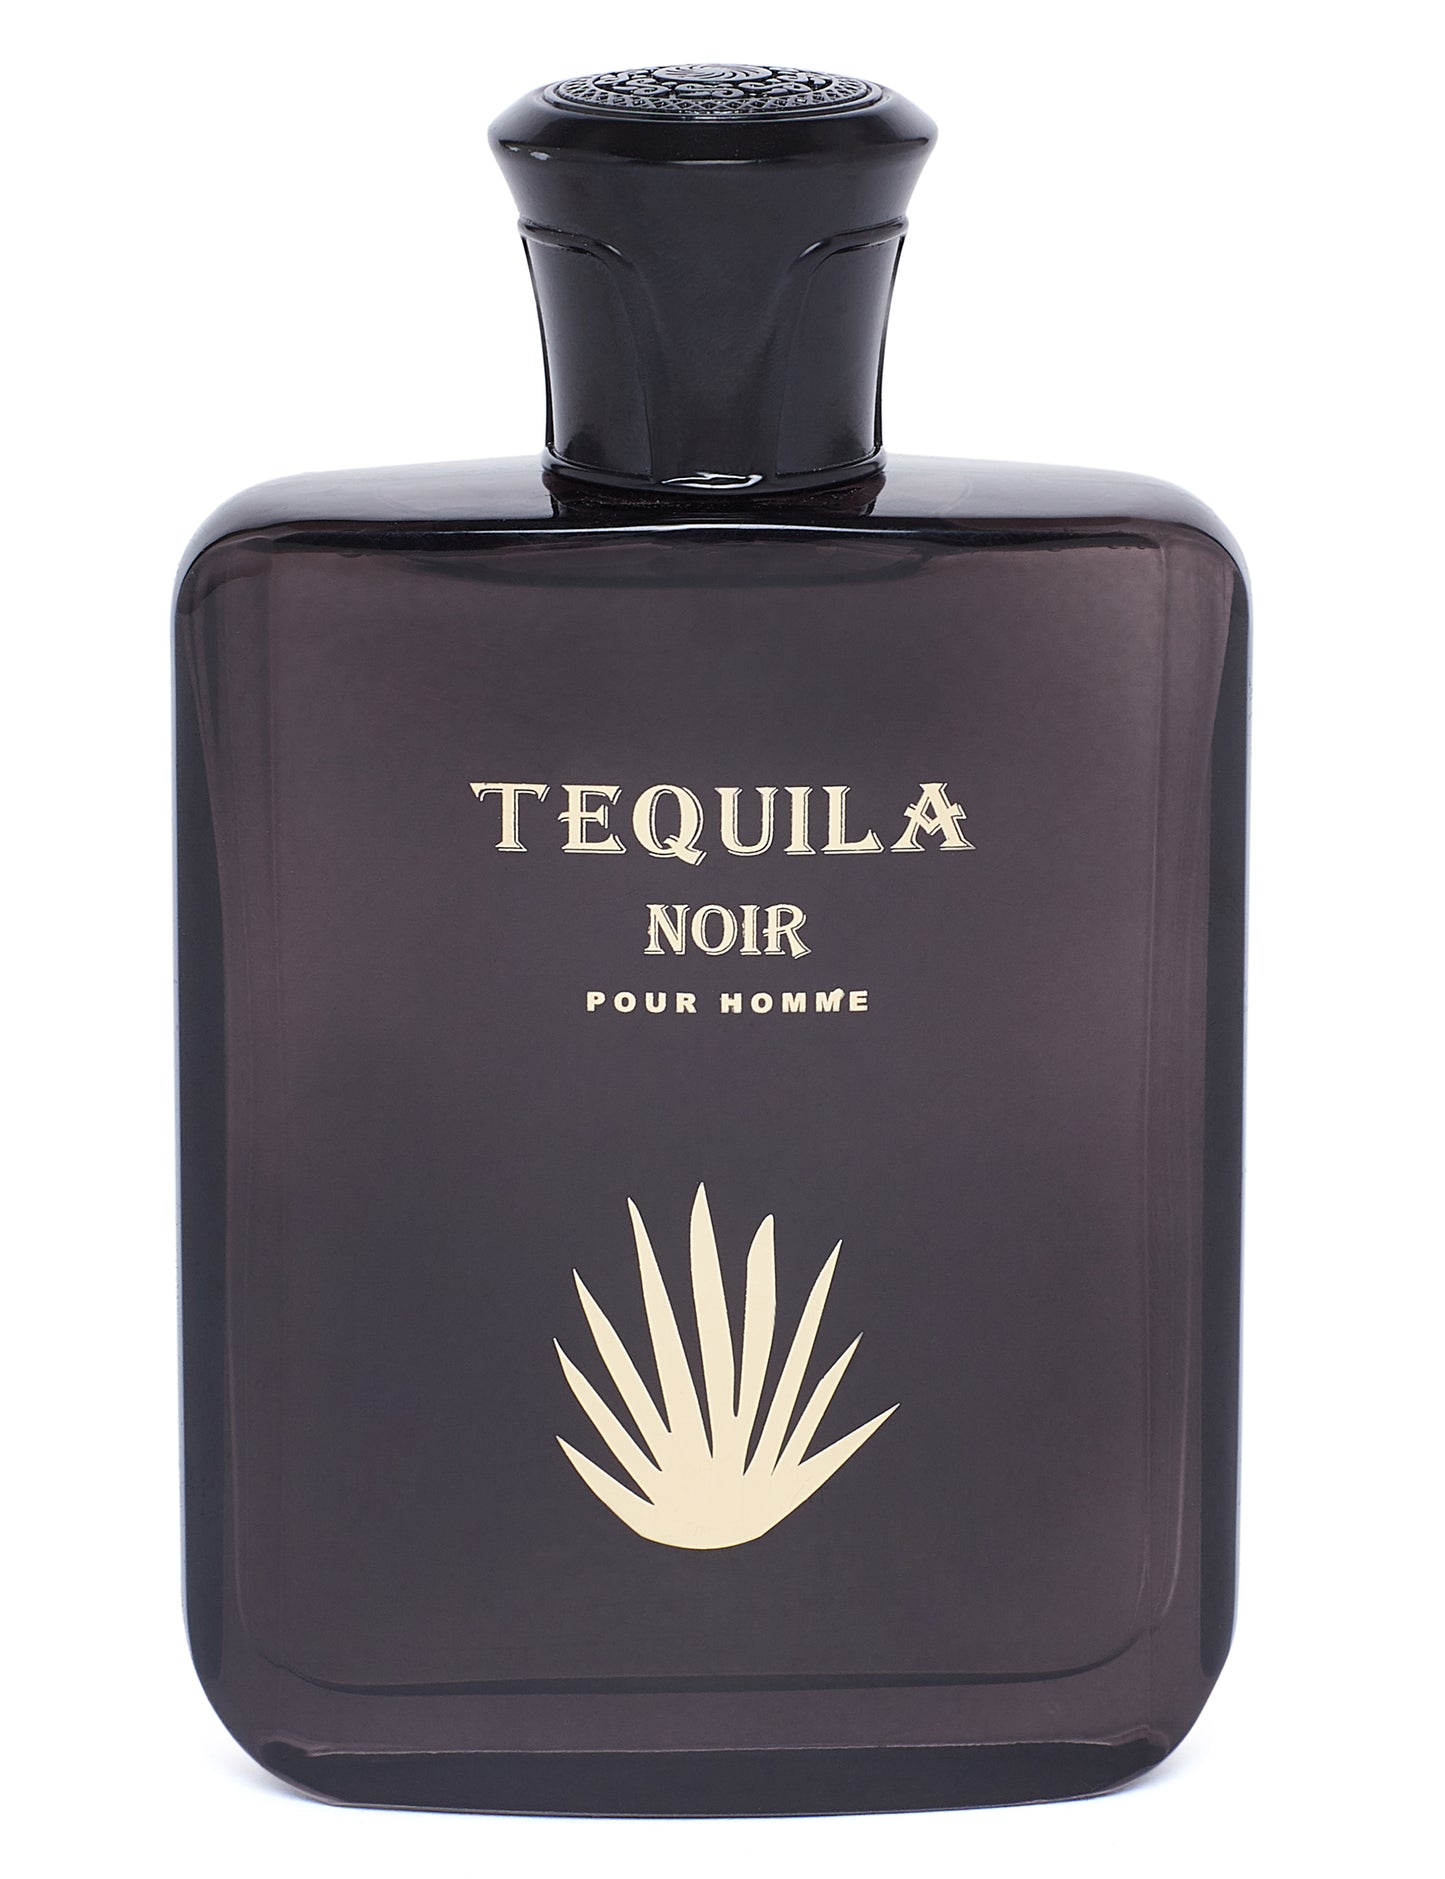 Tequila Oud by Tequila, 3.3 oz Eau de Parfum Spray for Men